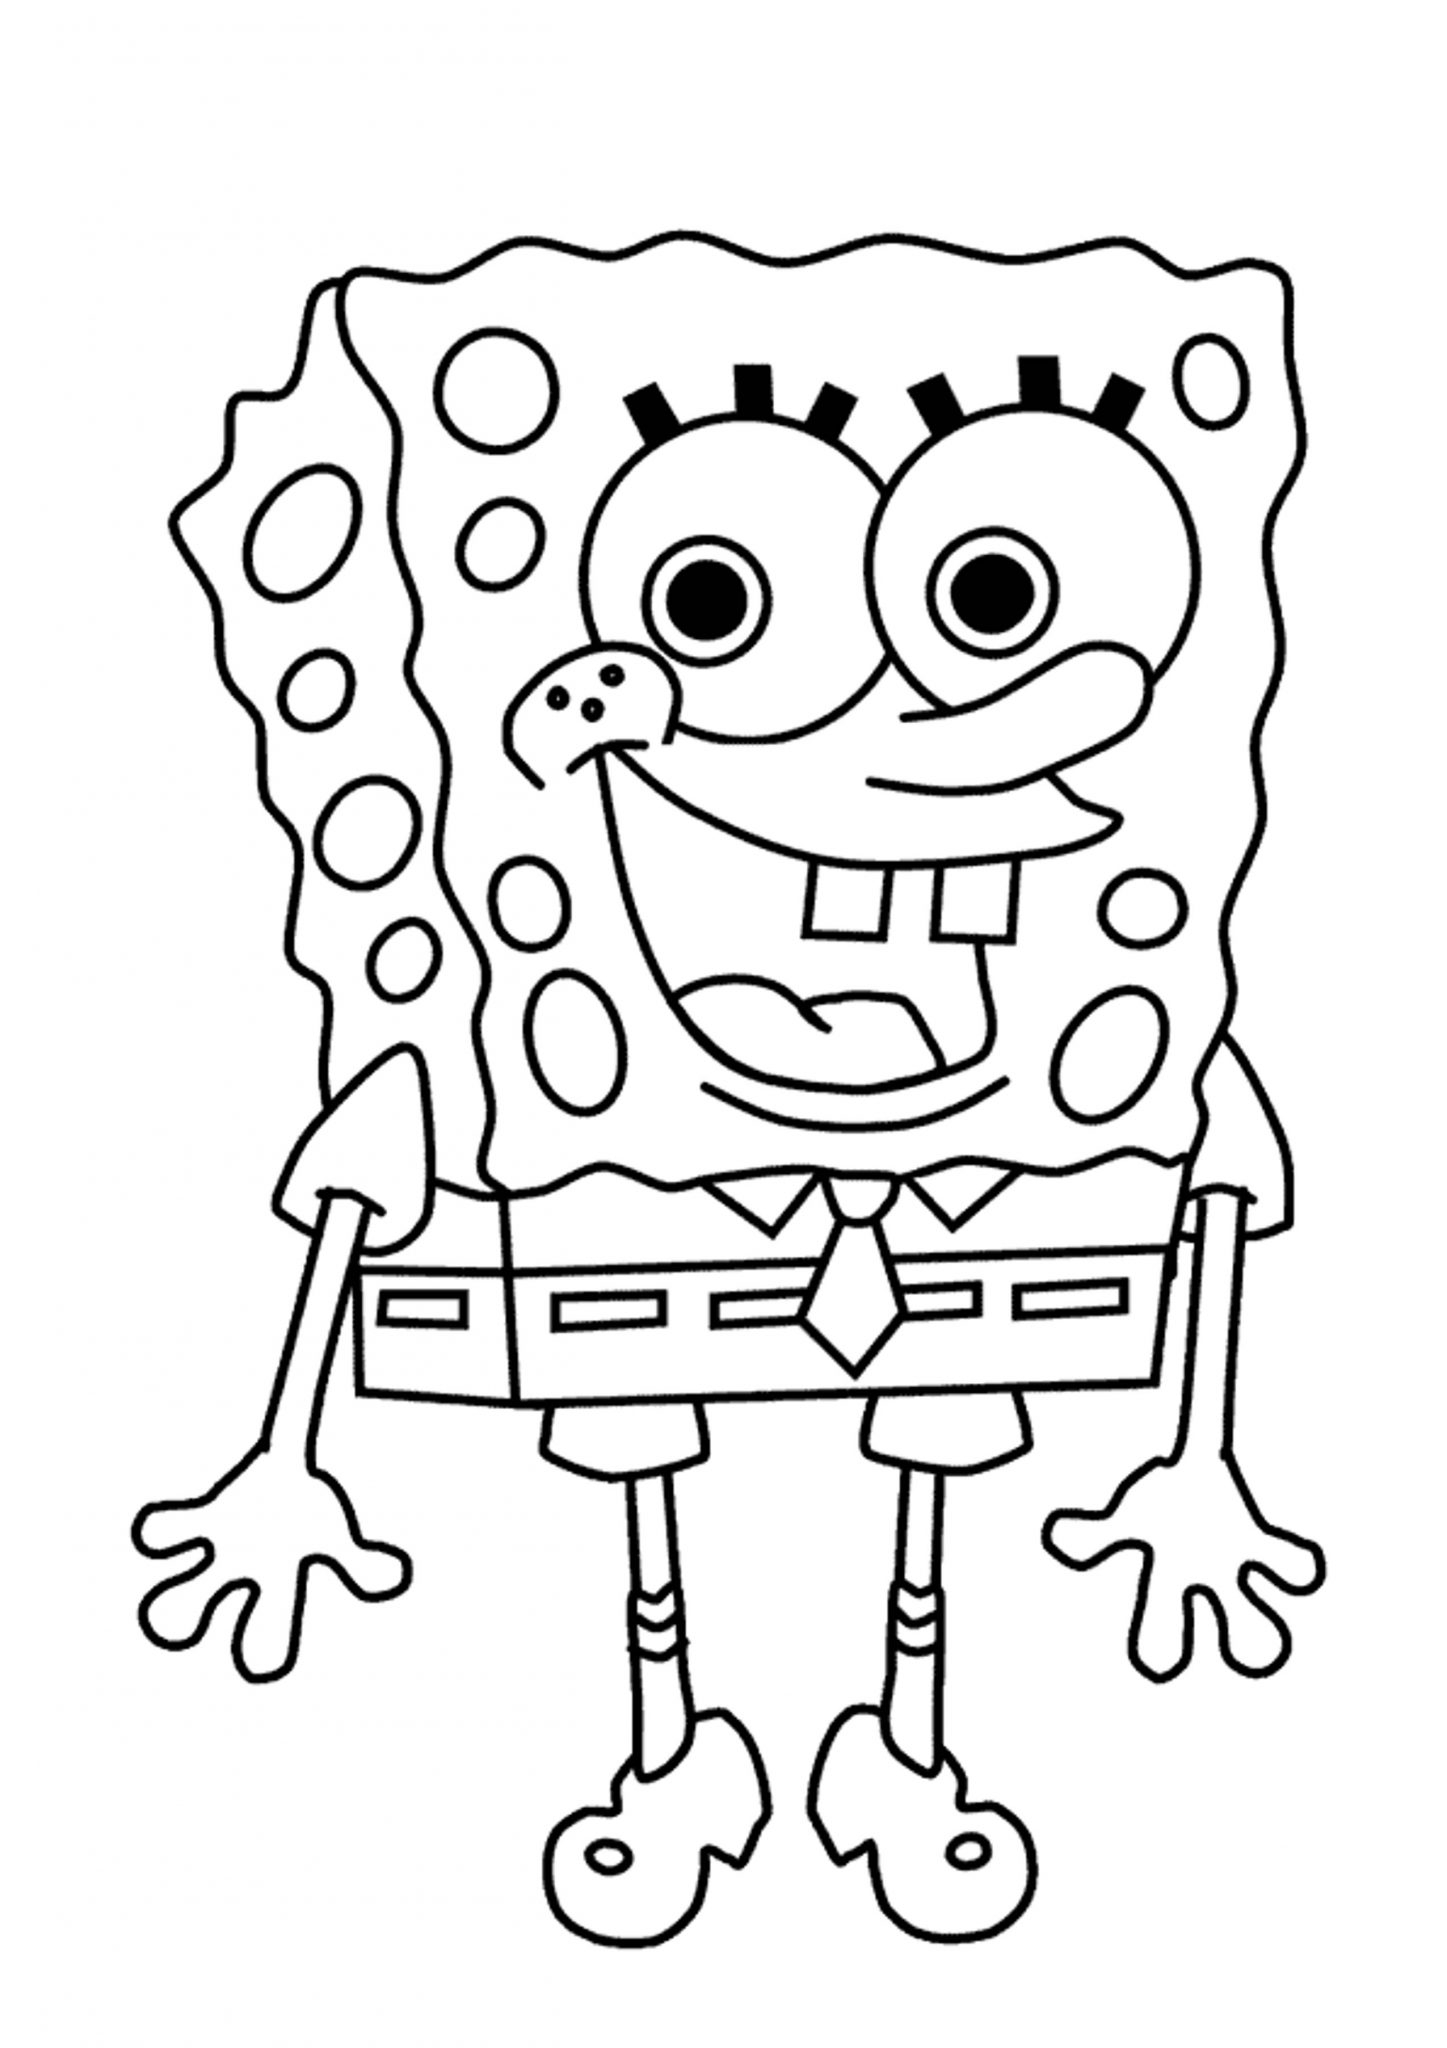 Spongebob Squarepants Drawing